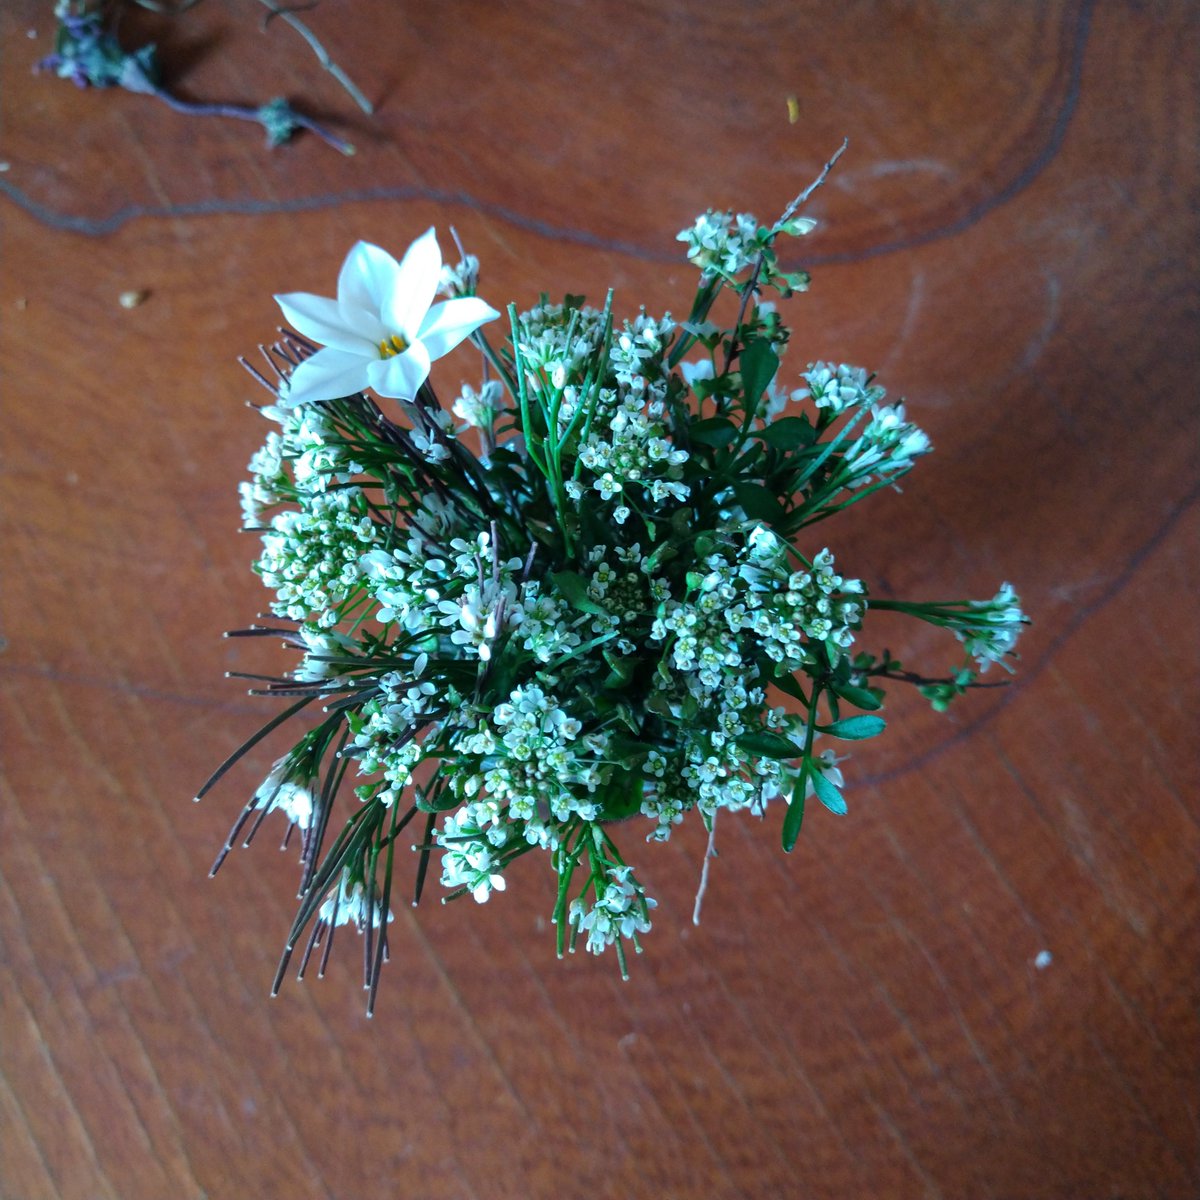 季節屋 なずなと他の白い花少し加えて 小さい白い花束